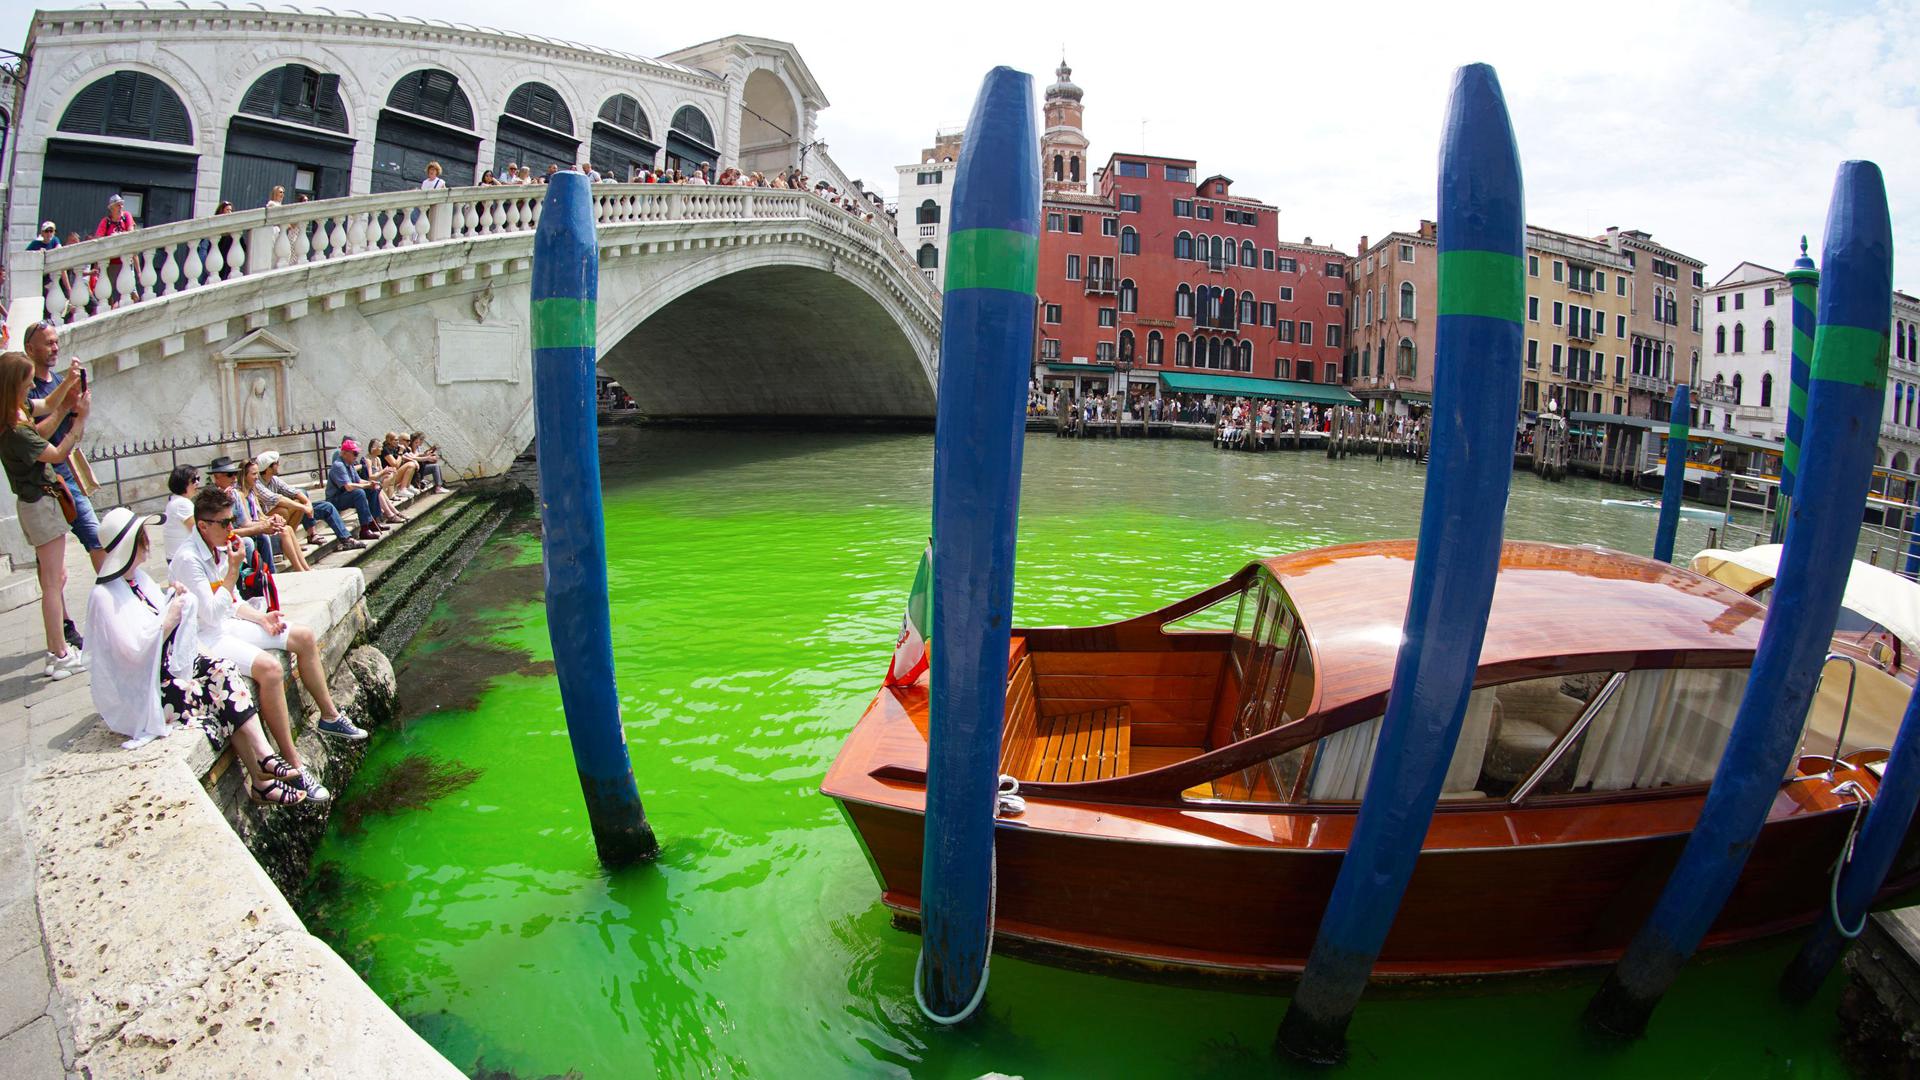 O Grande Canal de Veneza apareceu tingido de verde fluorescente este domingo